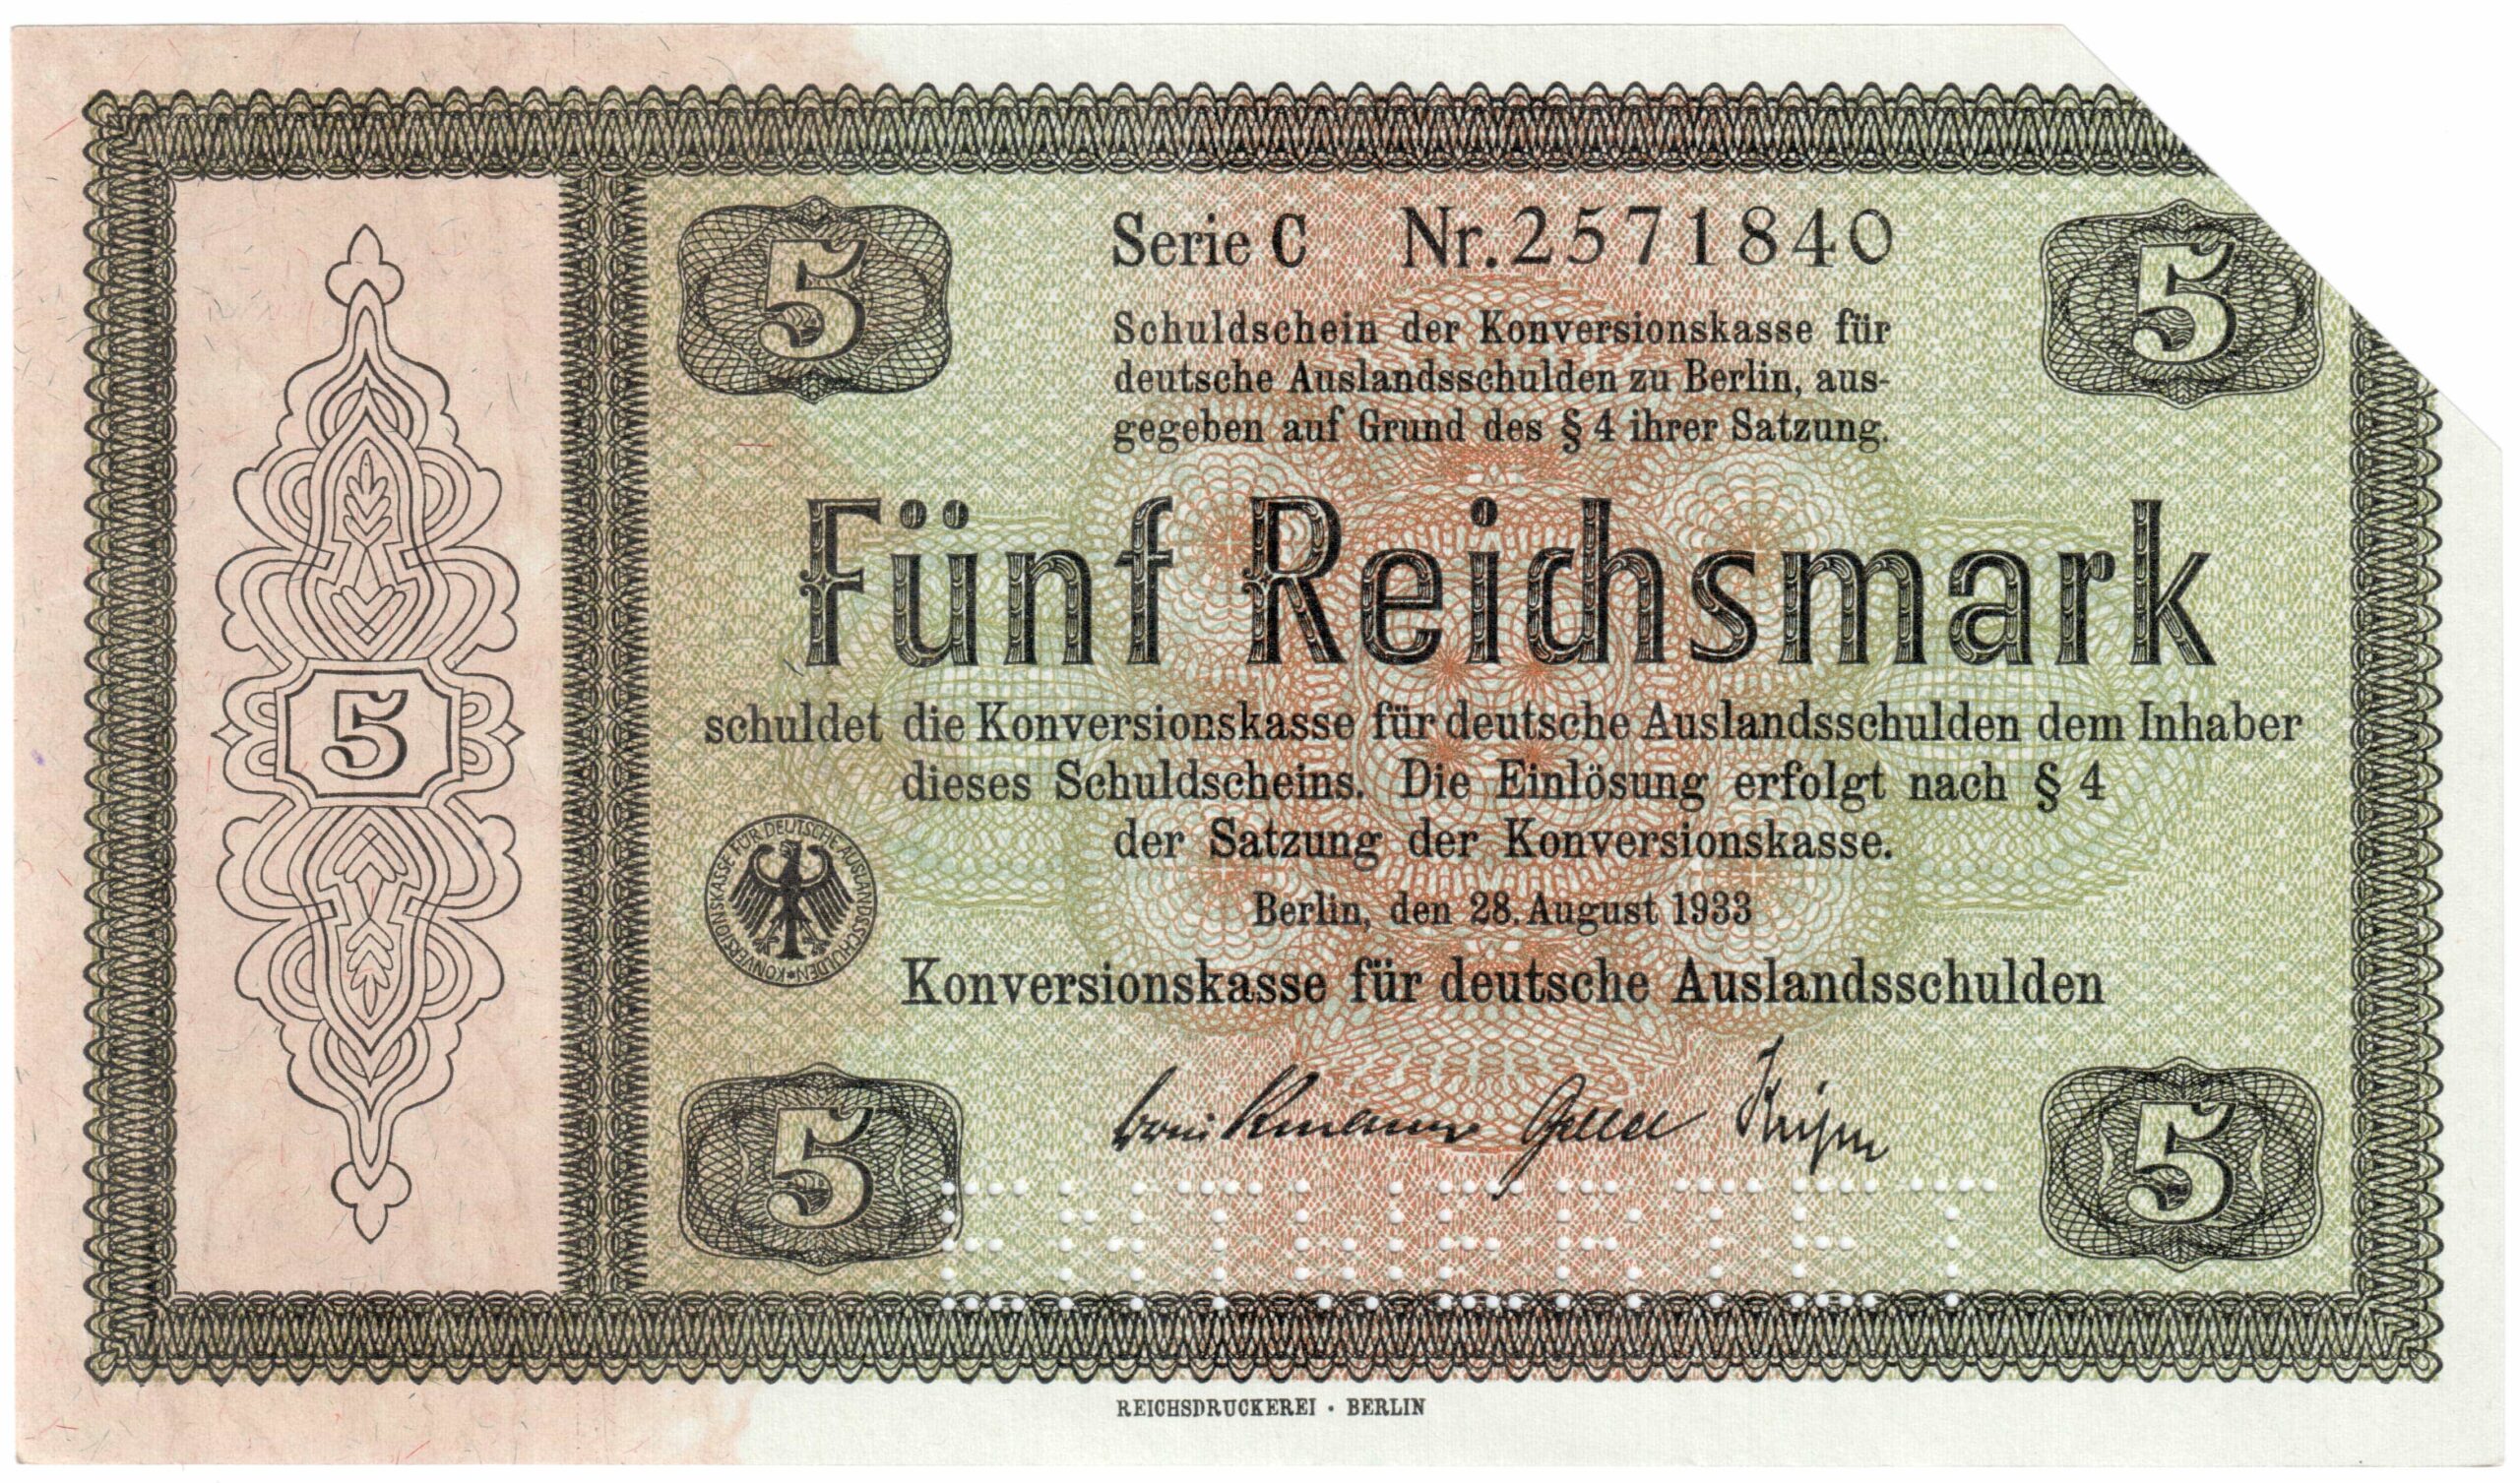 5 Reichsmark der Konversionskasse für deutsche Auslandsschulden 1933, Ro. 700 (entwertetes Wertpapier)